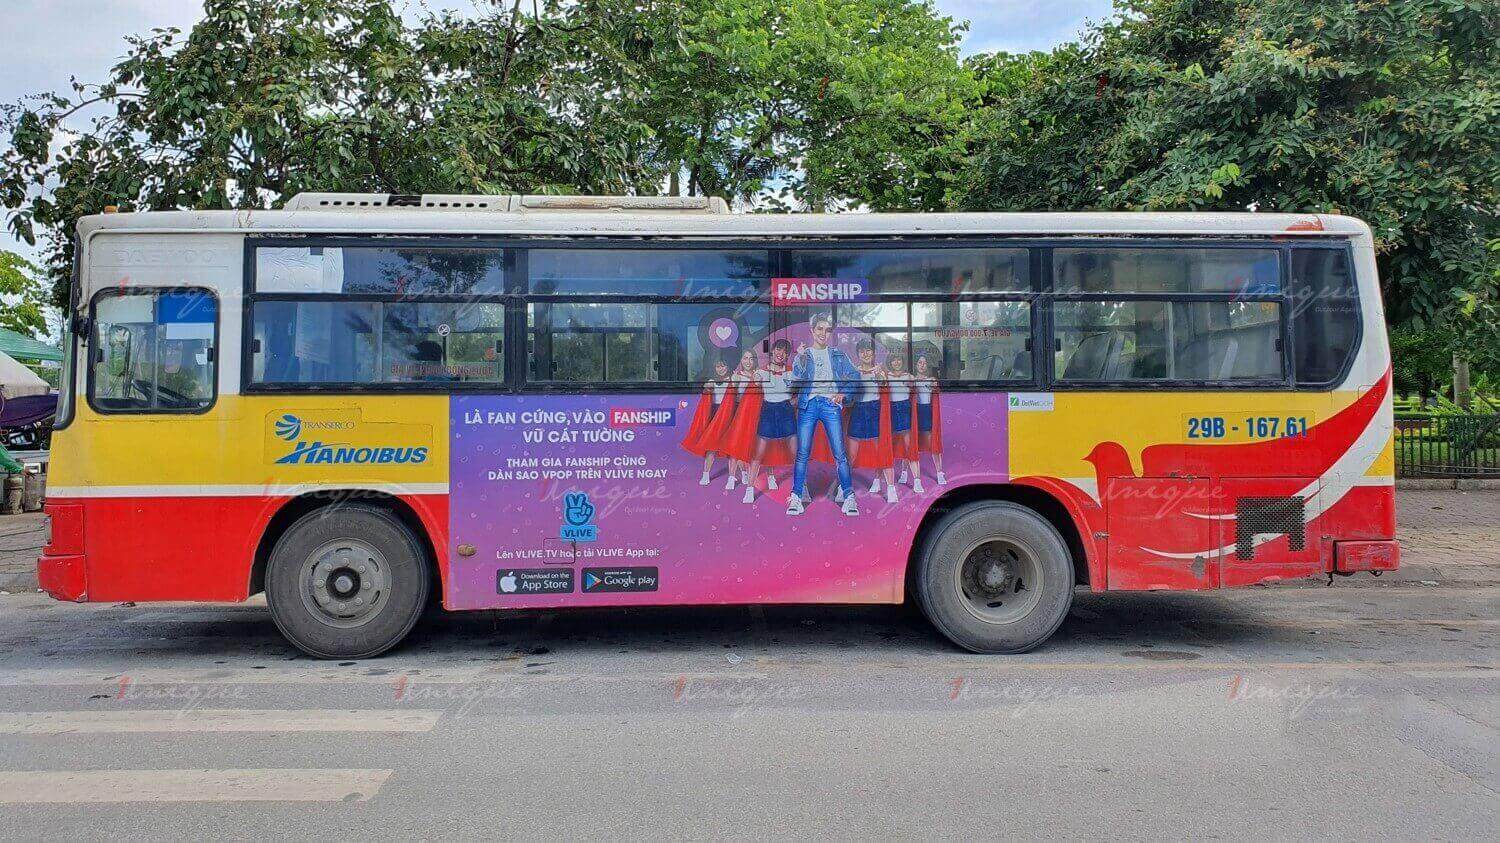  Vlive Fanship quảng cáo trên xe buýt cực sáng tạo và ấn tượng